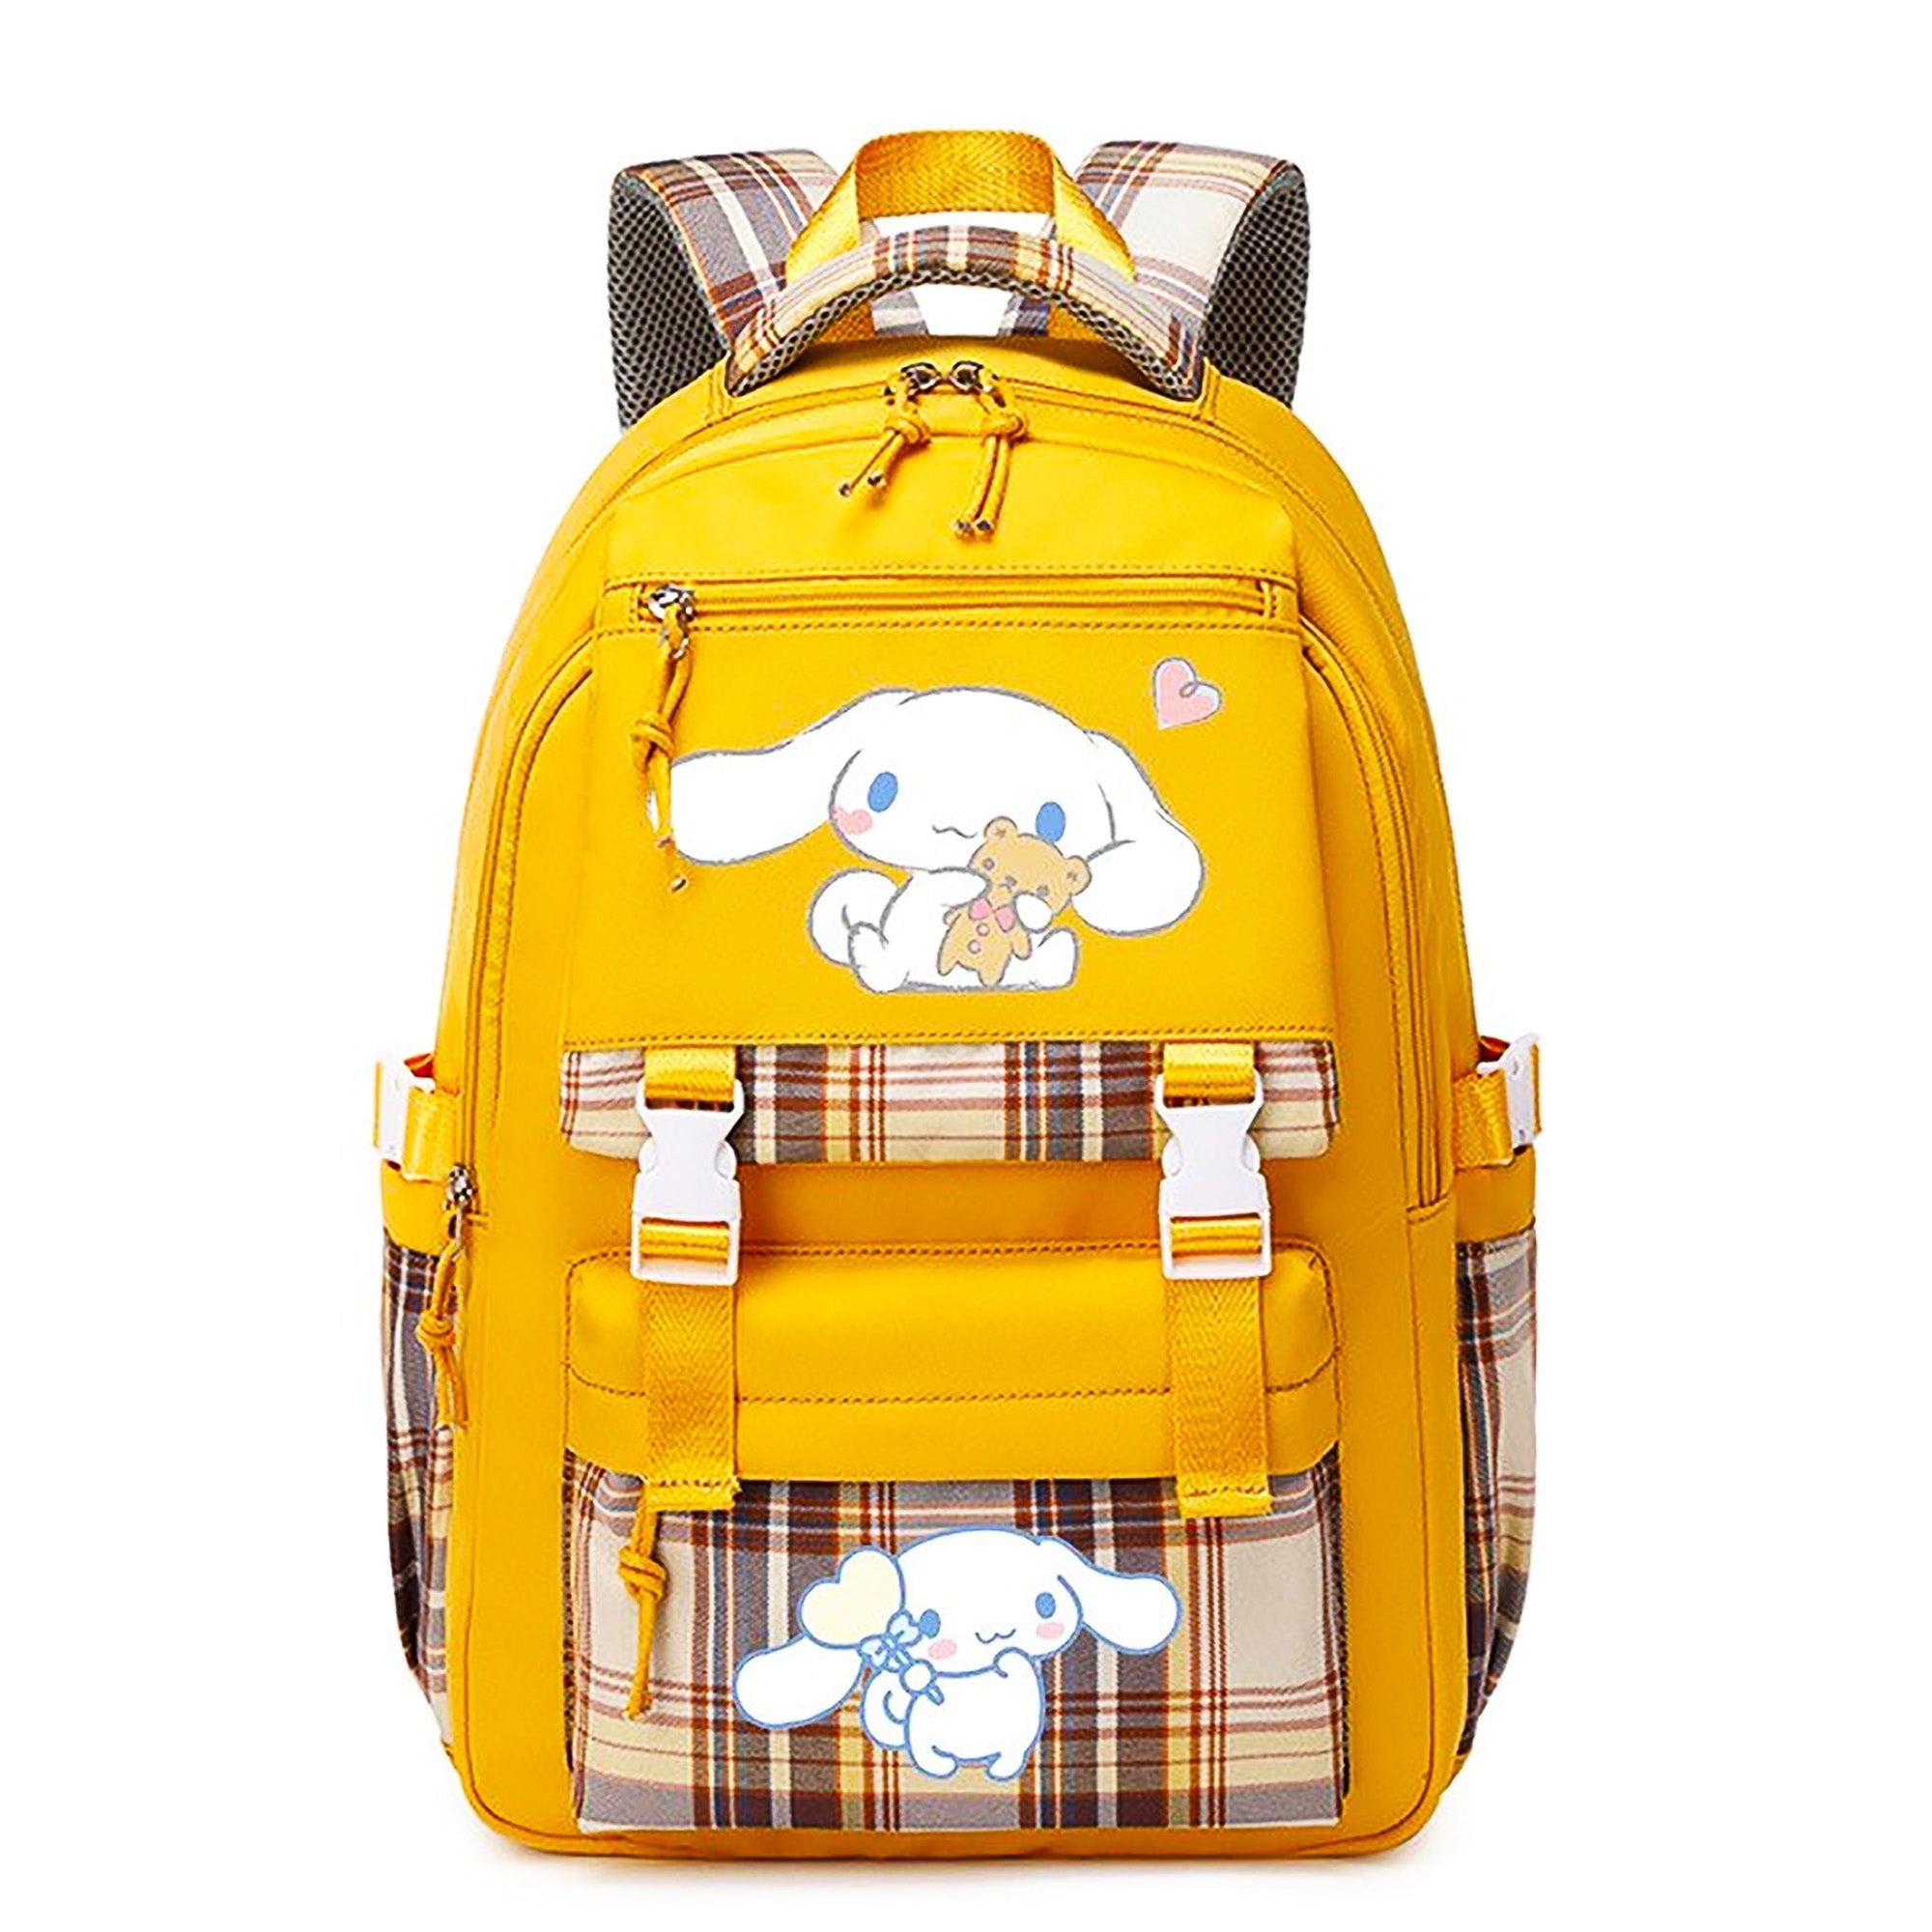 ♡ soft chibi kawaii kitty backpack 3.0